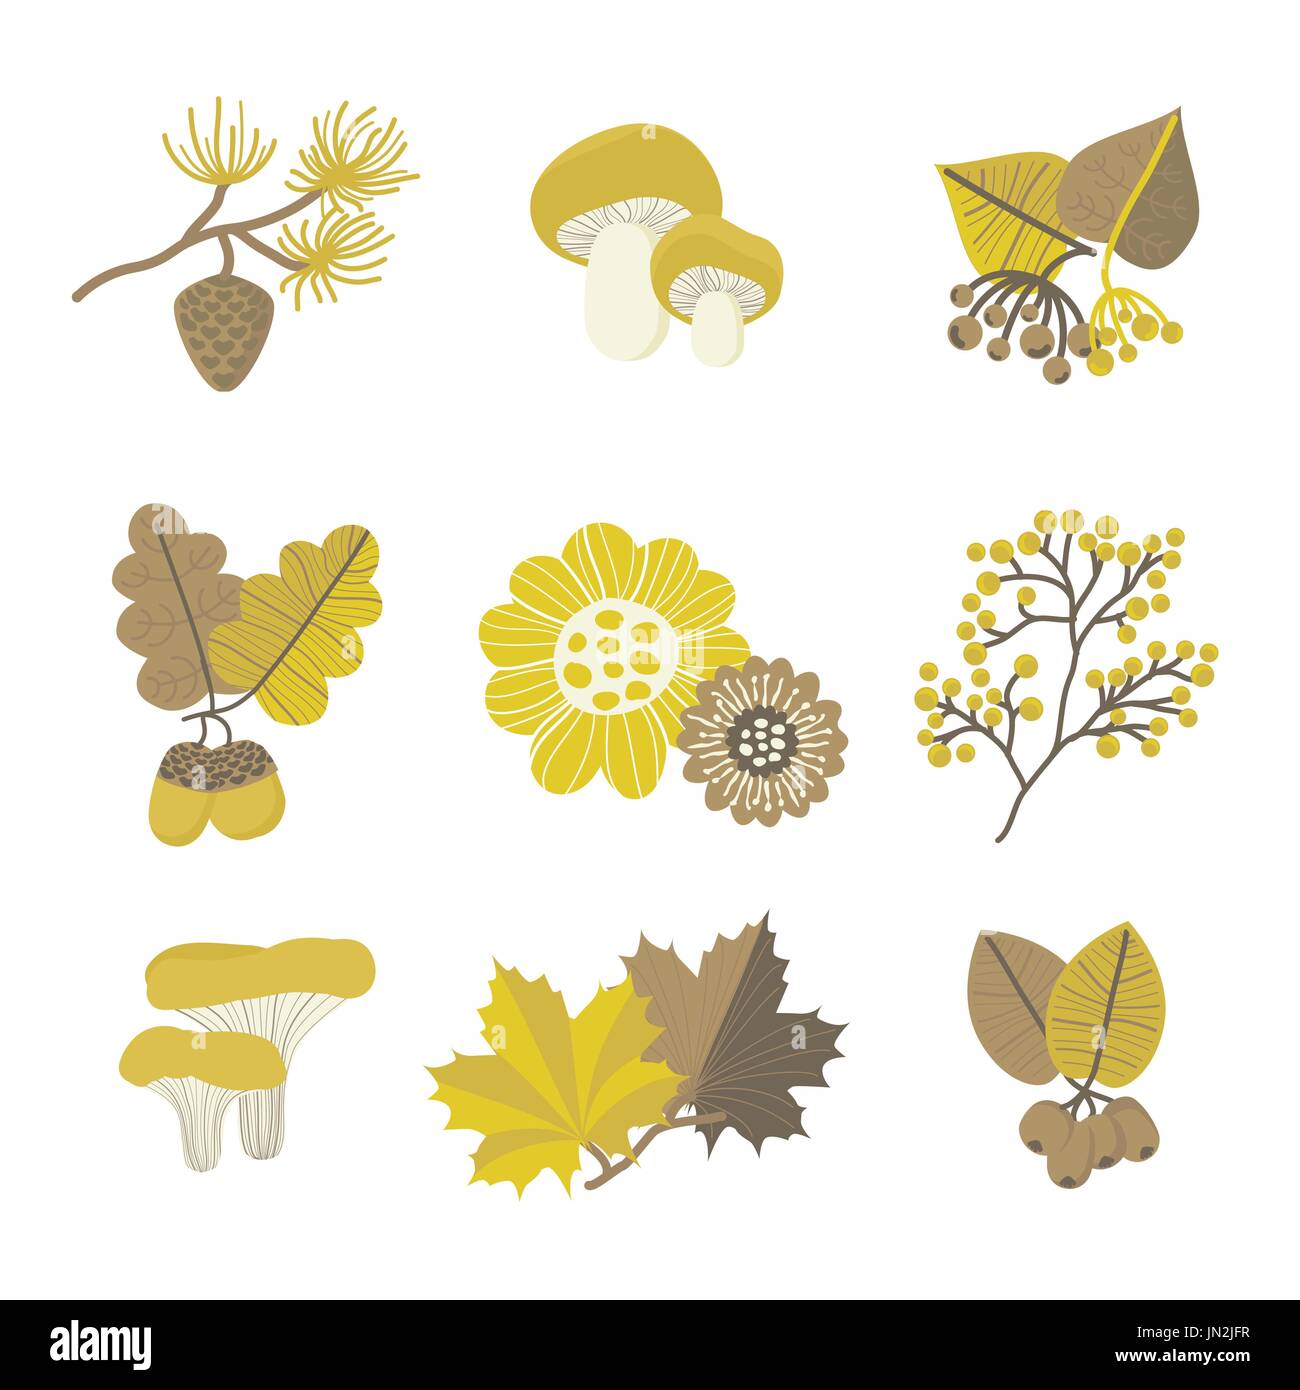 Bunte Vektor Illustration Wald set mit floralen Naturelemente für Design und Dekor. Orientalischen Stil. Stock Vektor